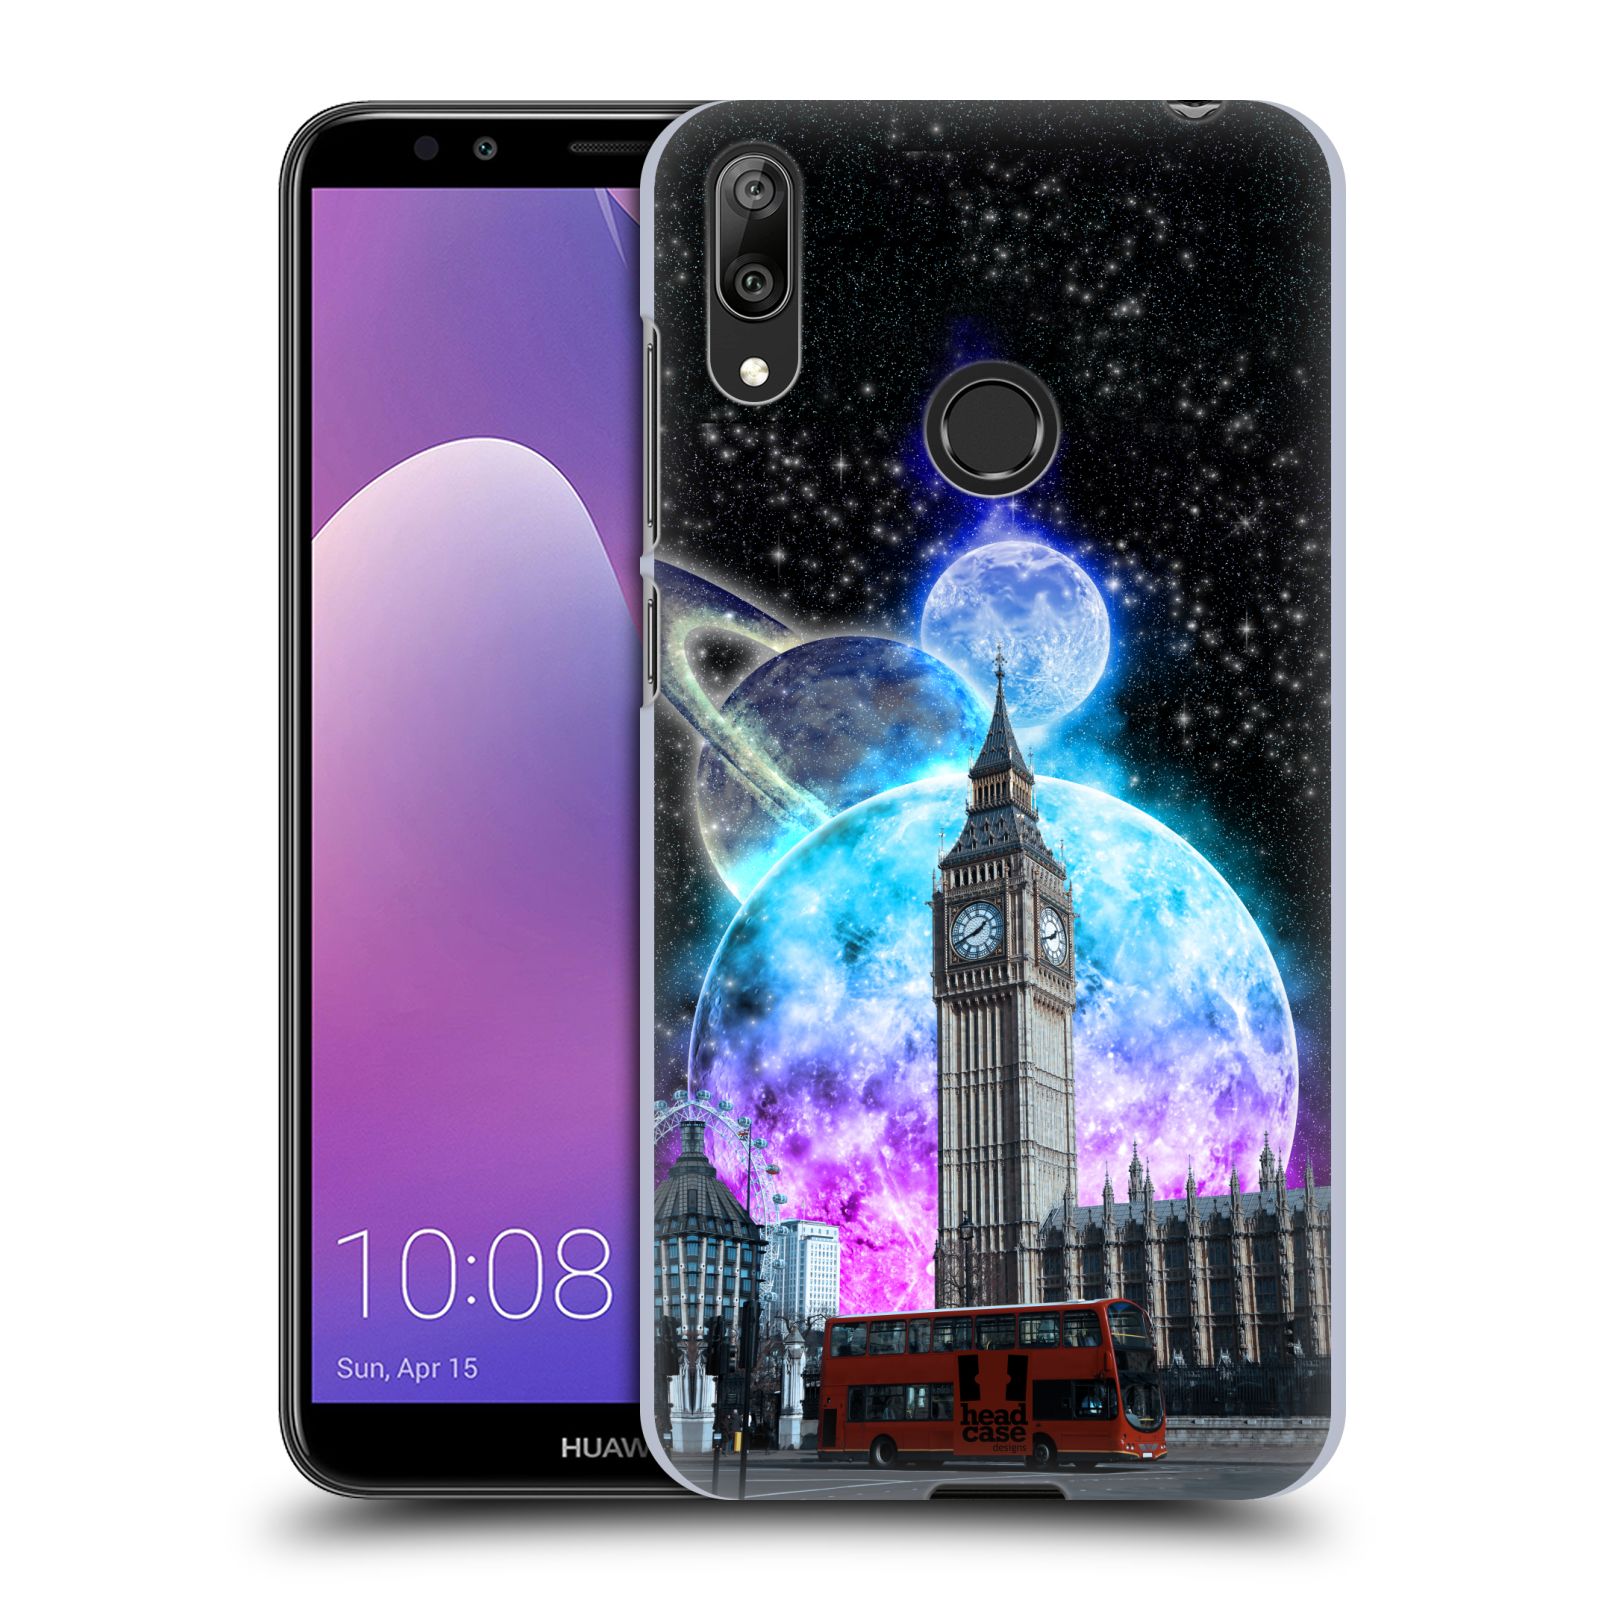 Plastové pouzdro na mobil Huawei Y7 (2019) - Head Case - Měsíční Londýn (Plastový kryt, pouzdro, obal na mobilní telefon Huawei Y7 2019 s motivem Měsíční Londýn)